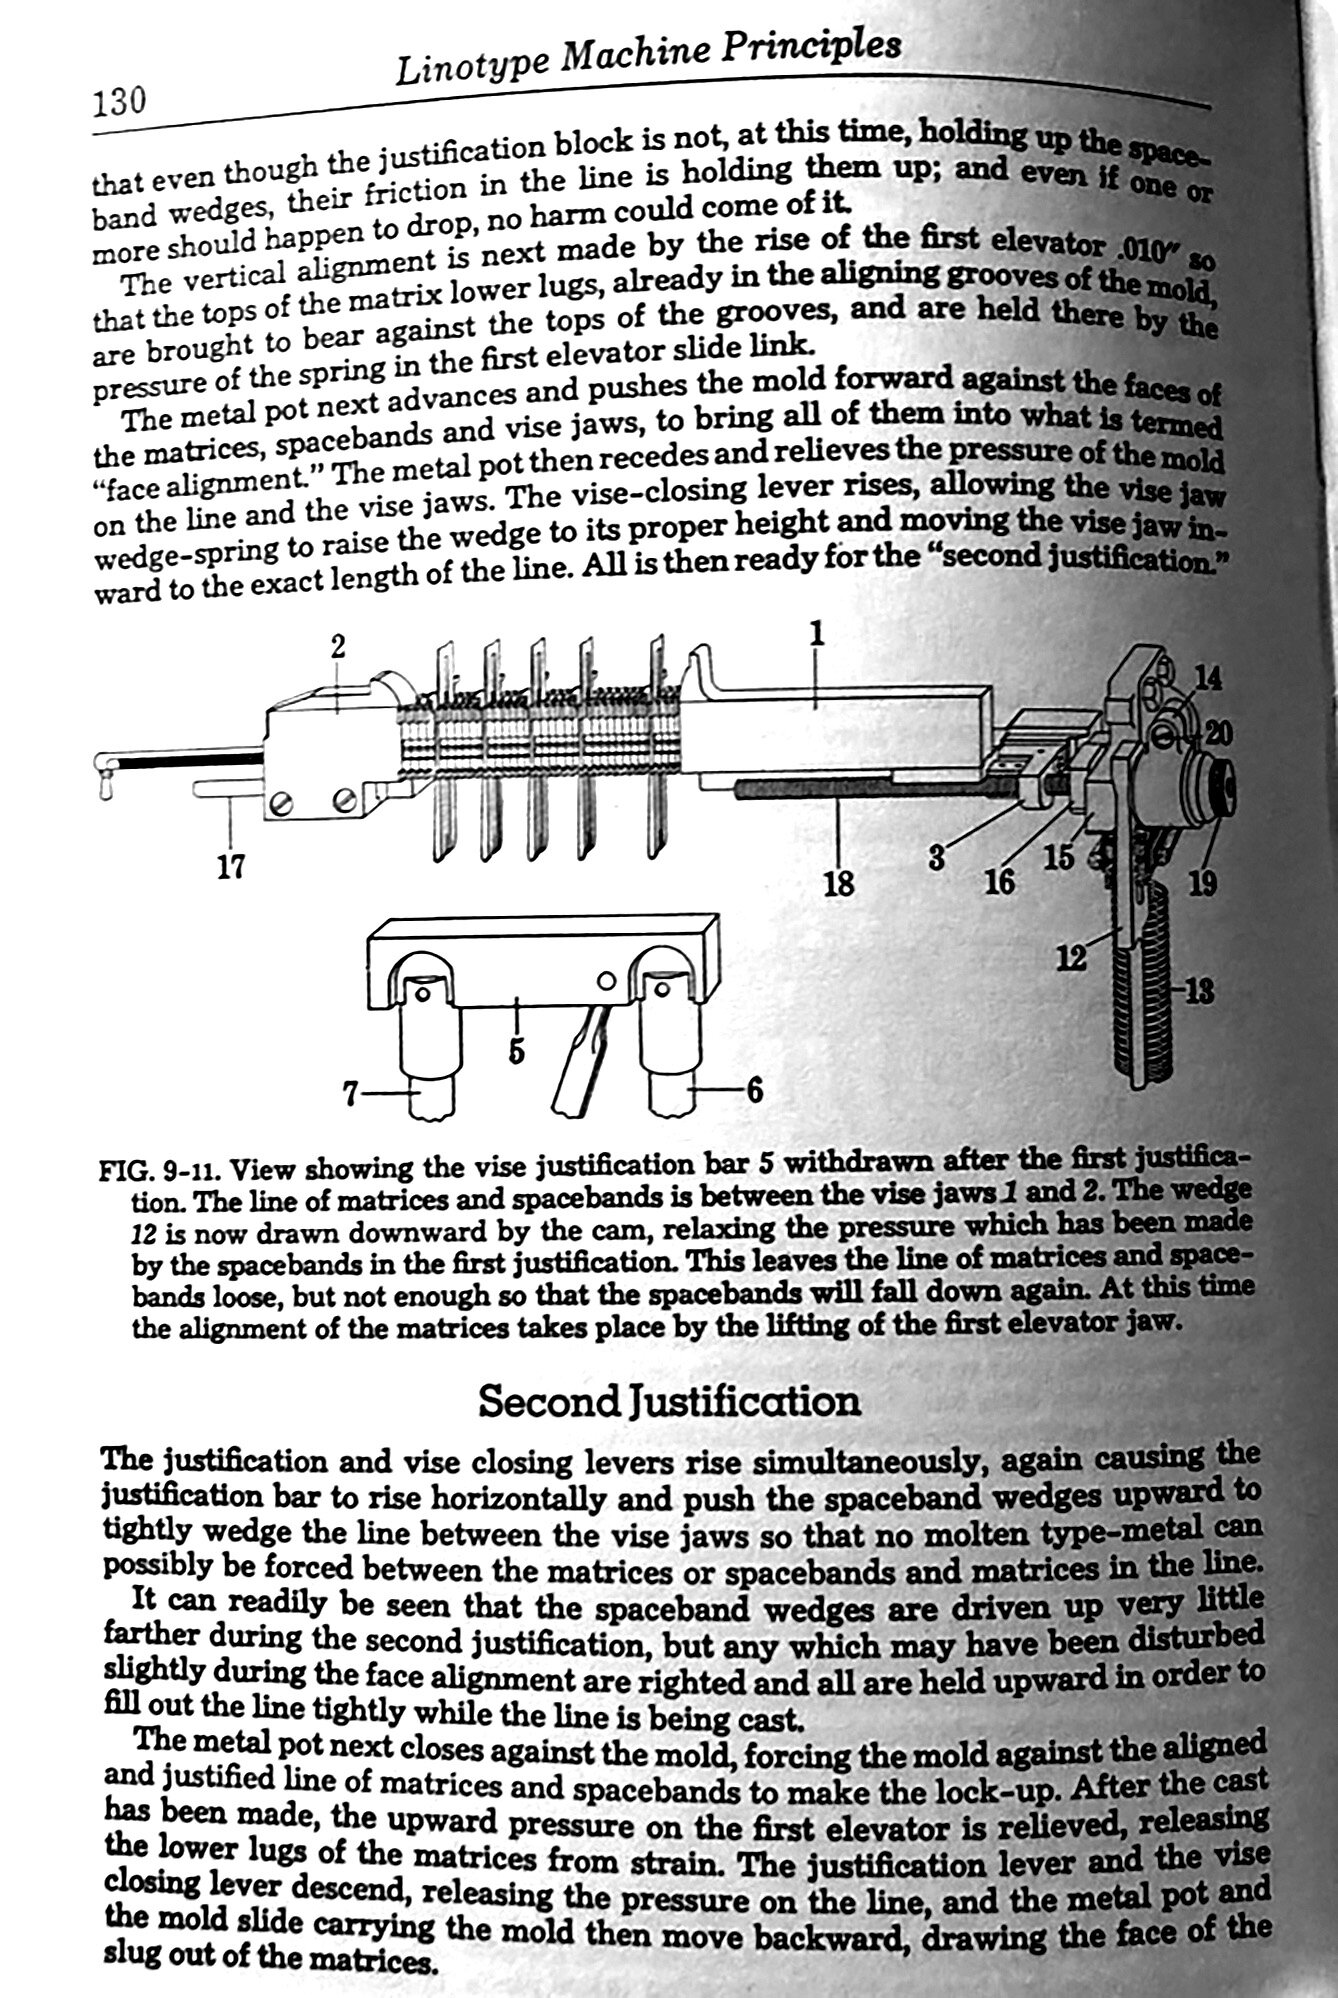 Linotype Machine Principles Page 130.jpg